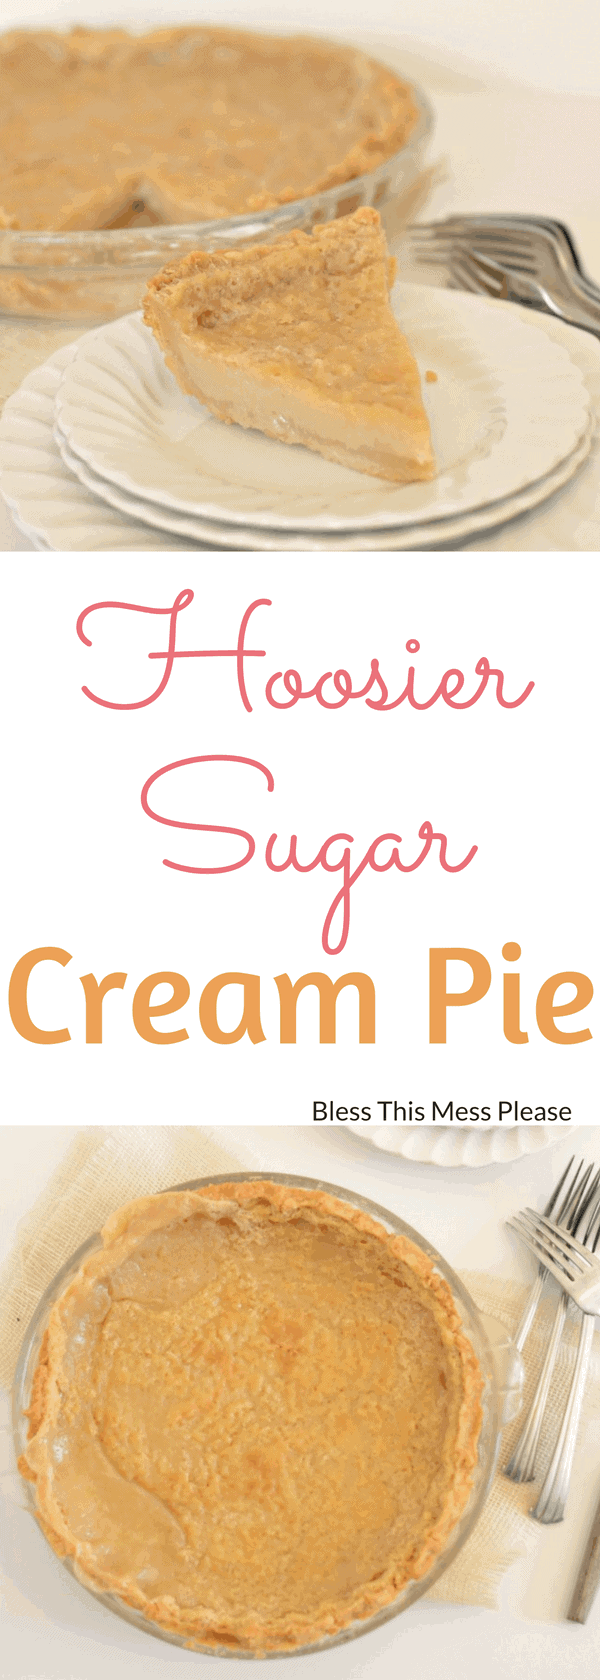 Hoosier Sugar Cream Pie